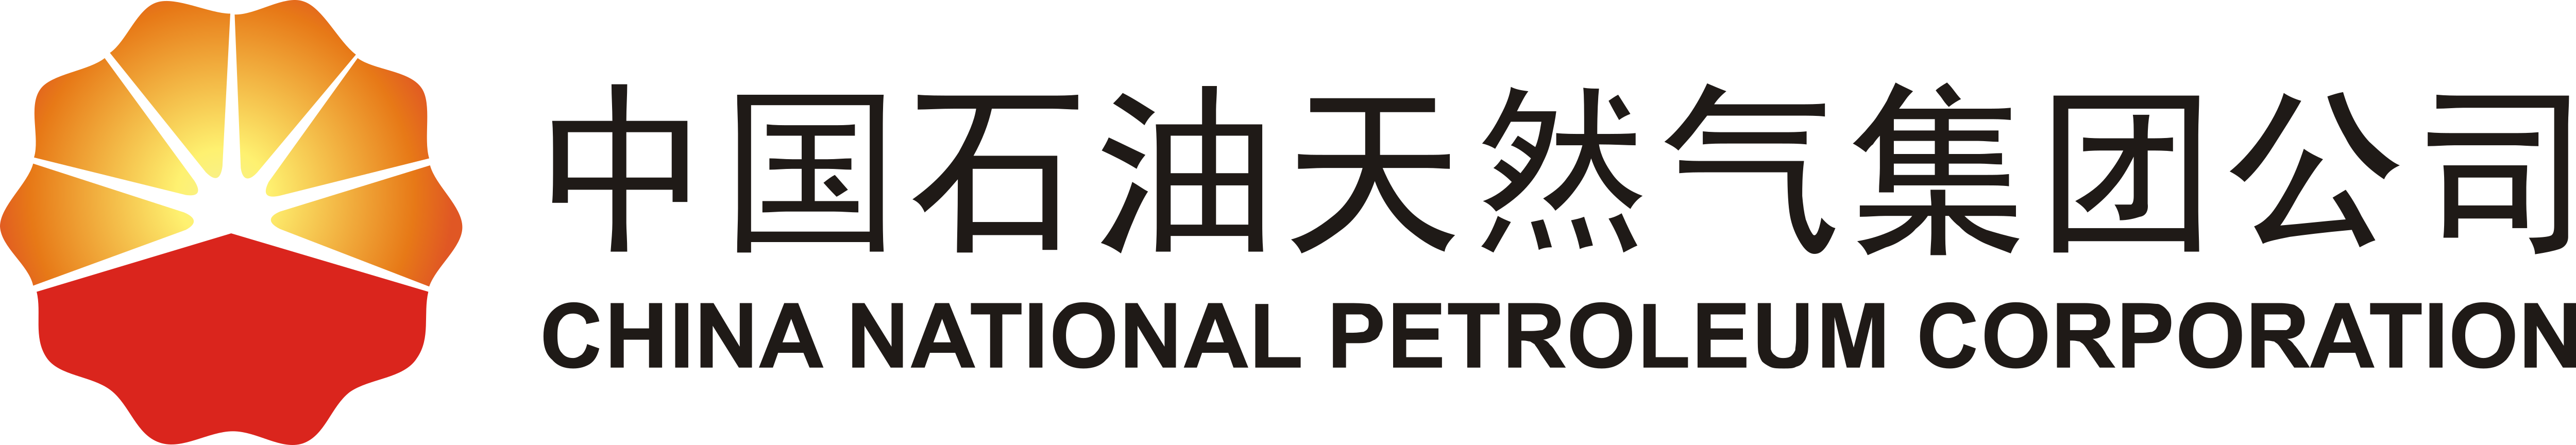 Китайская национальная корпорация. Китайская Национальная нефтяная Корпорация (CNPC). Китайская Национальная нефтегазовая Корпорация логотип. China National Petroleum Corporation логотип. CNPC лого.